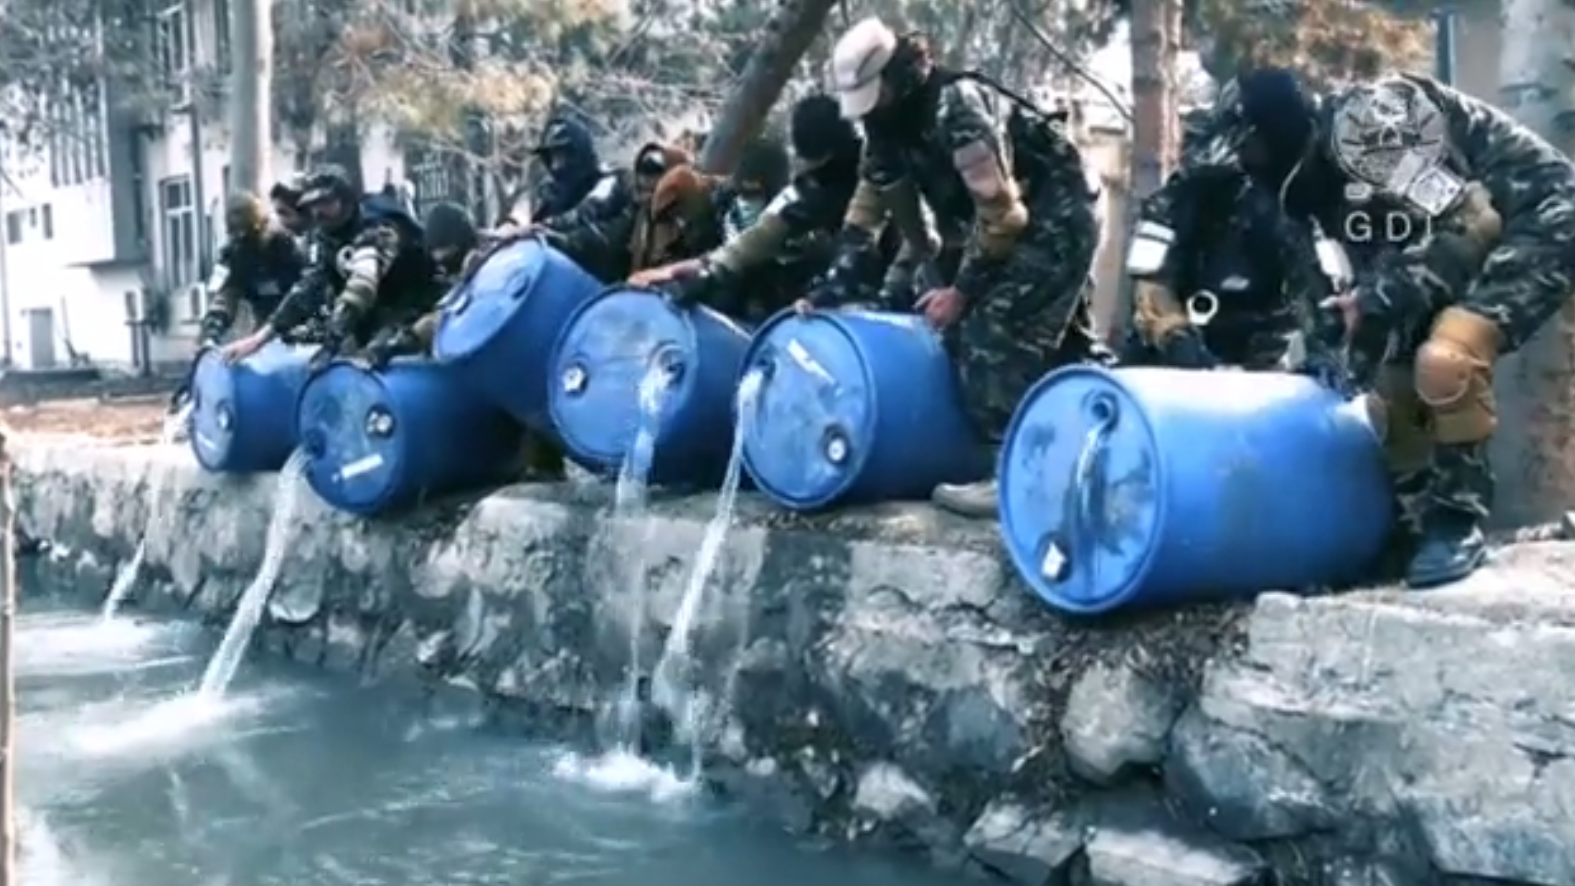 Das vom Taliban-Geheimdienst veröffentlichte Video zeigt Kämpfer, die Fässer mit Alkohol in einen Kanal leeren. (Bild: General Directorate of Intelligence)